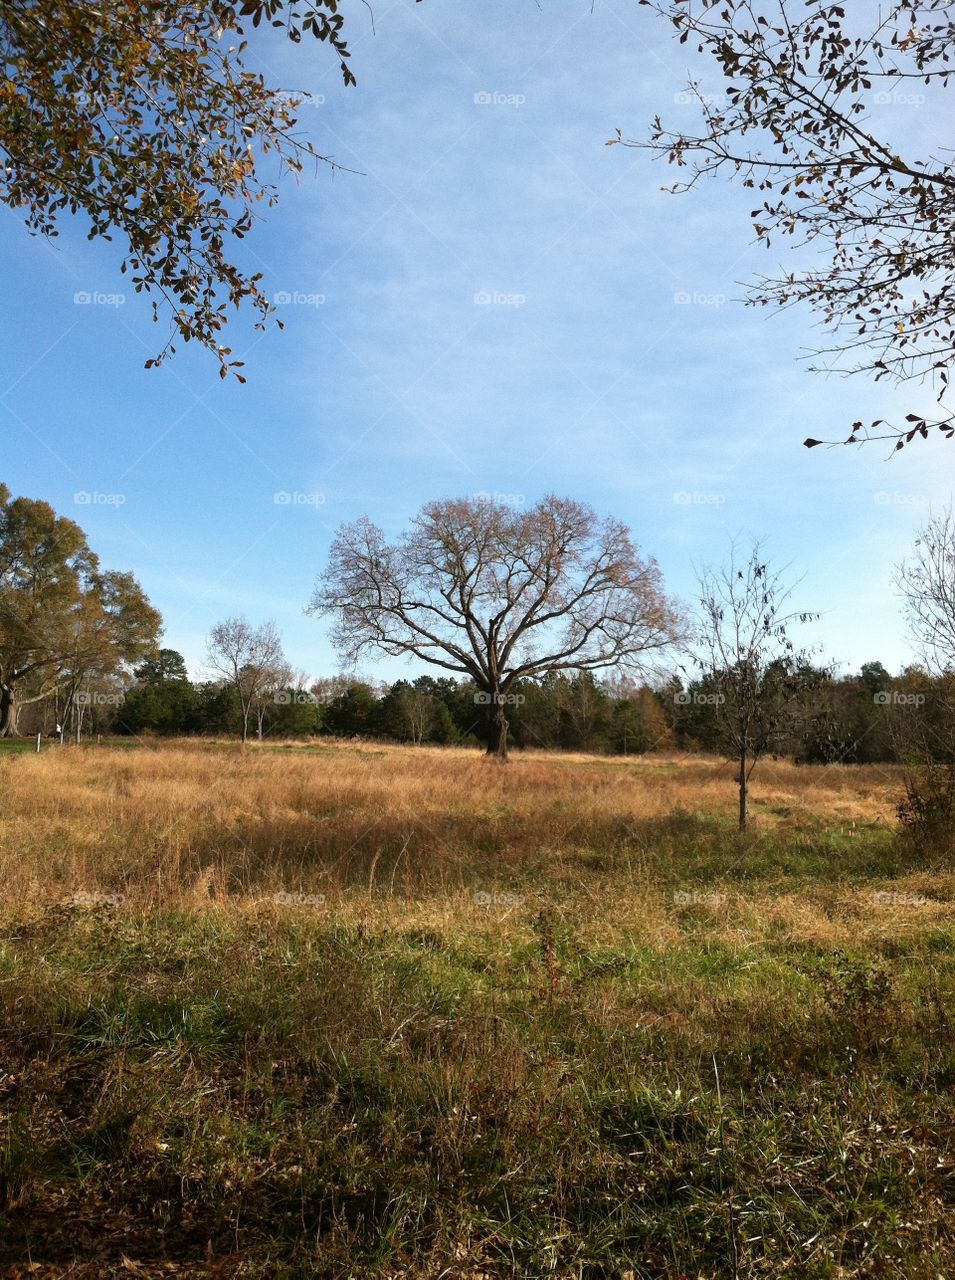 Lone sentinel oak tree in an open field in autumn.